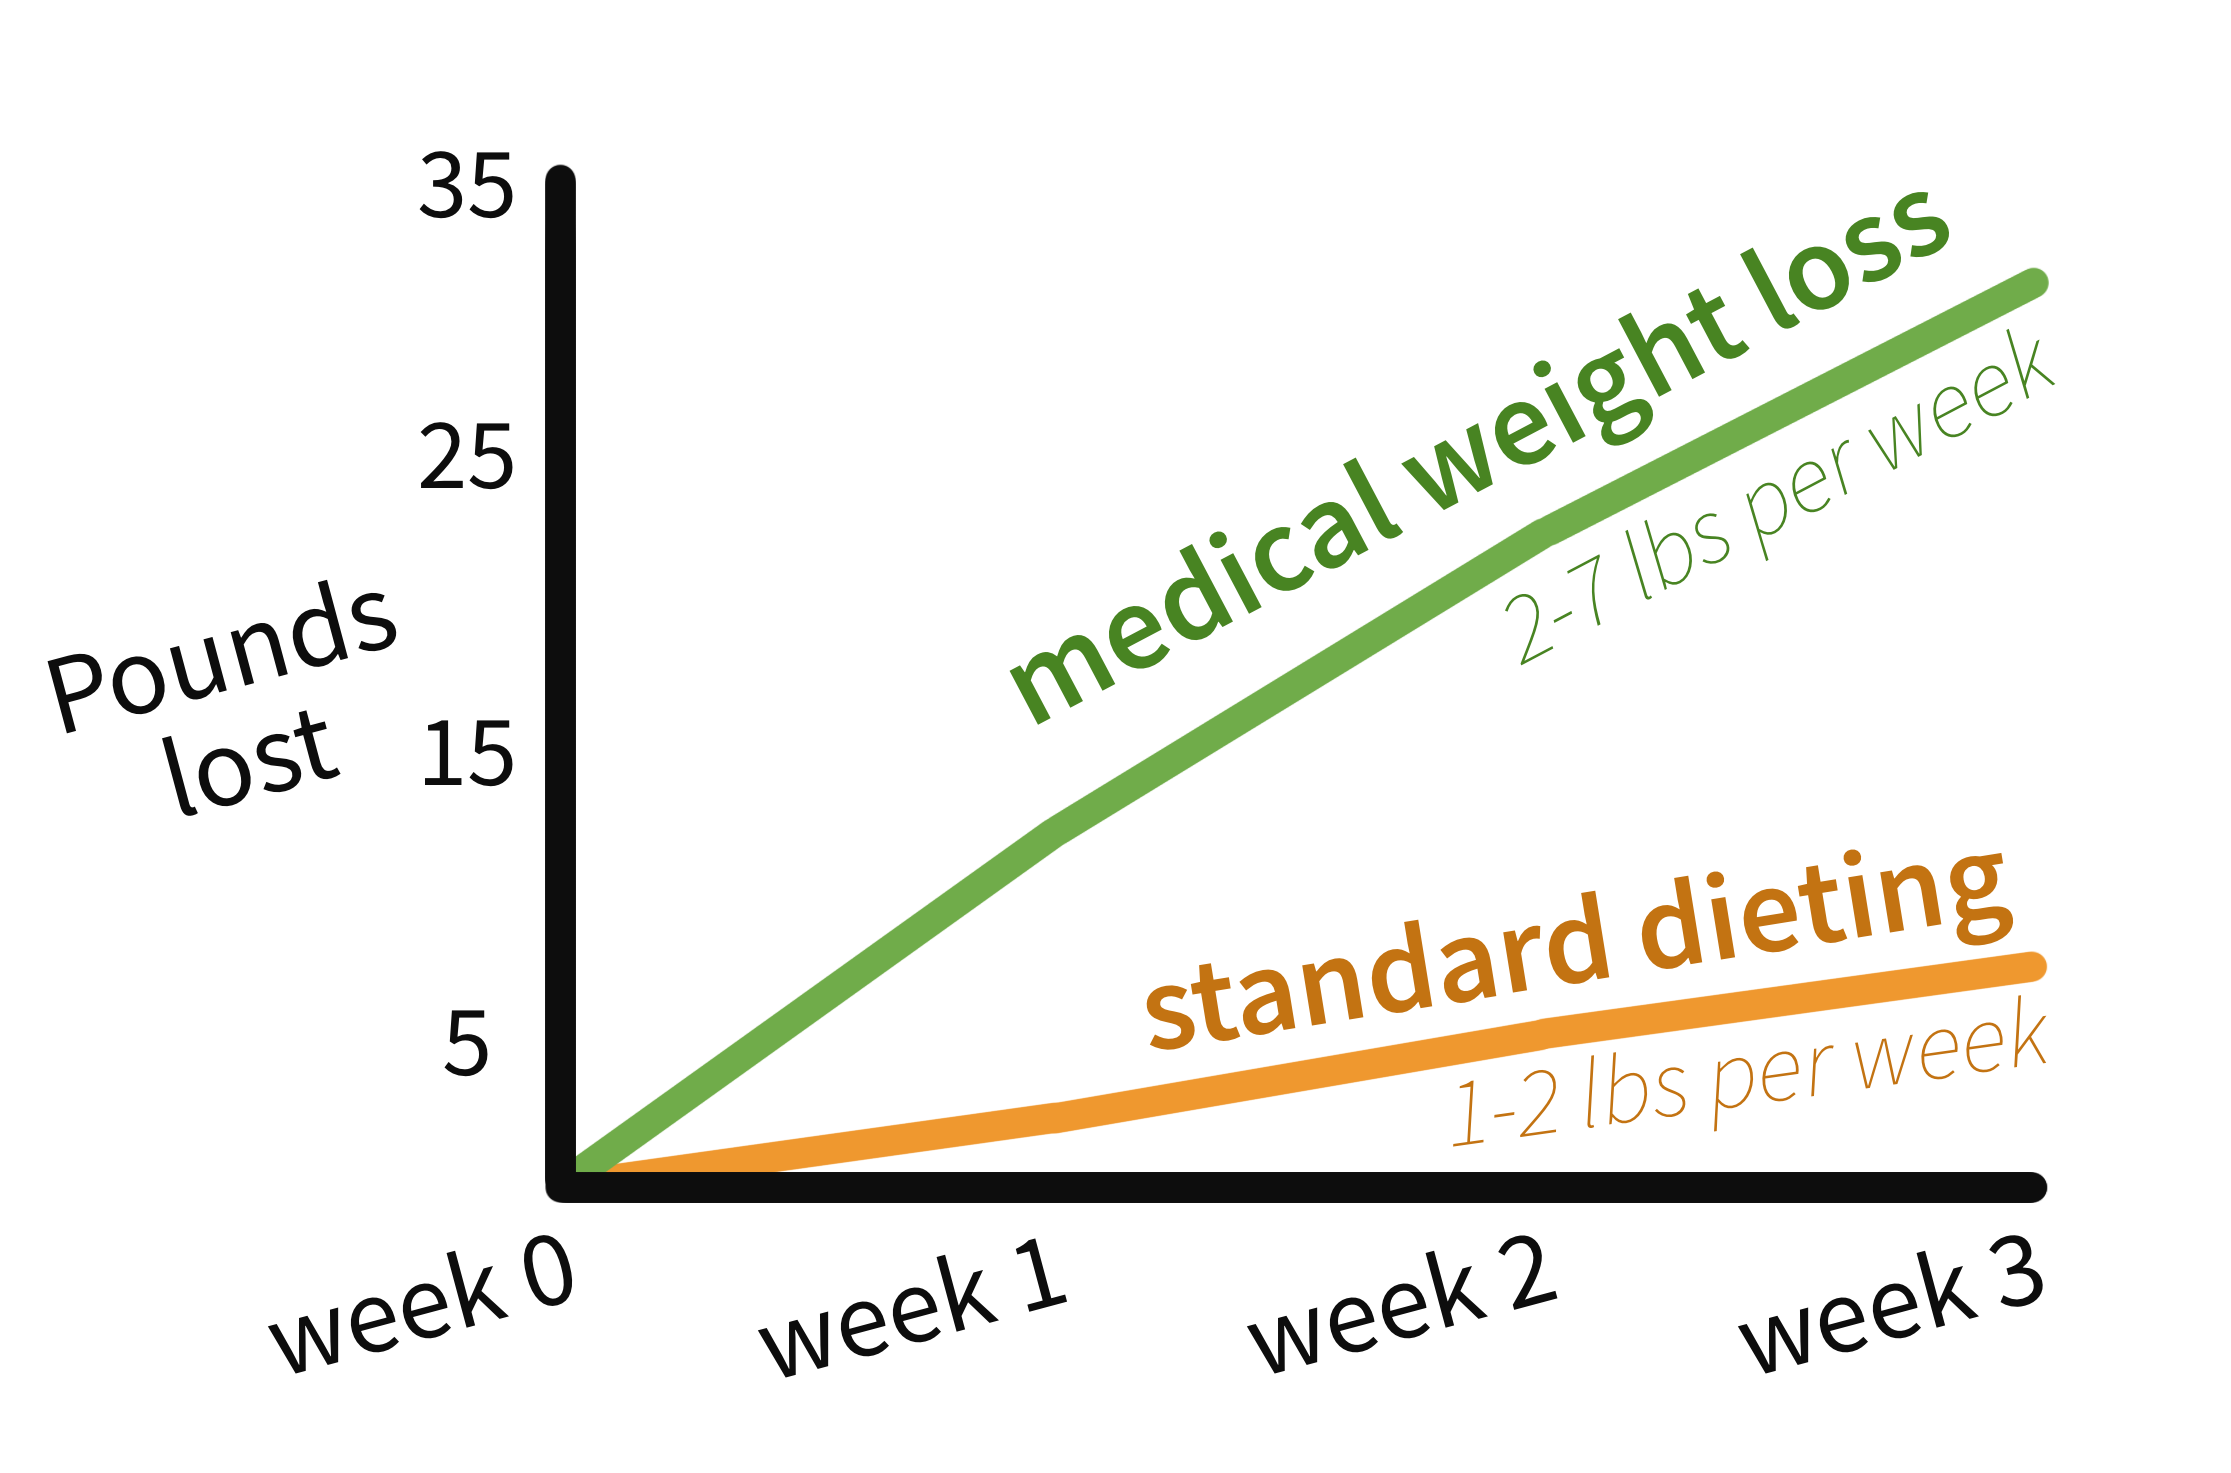 medical weight loss versus standard diet info graph